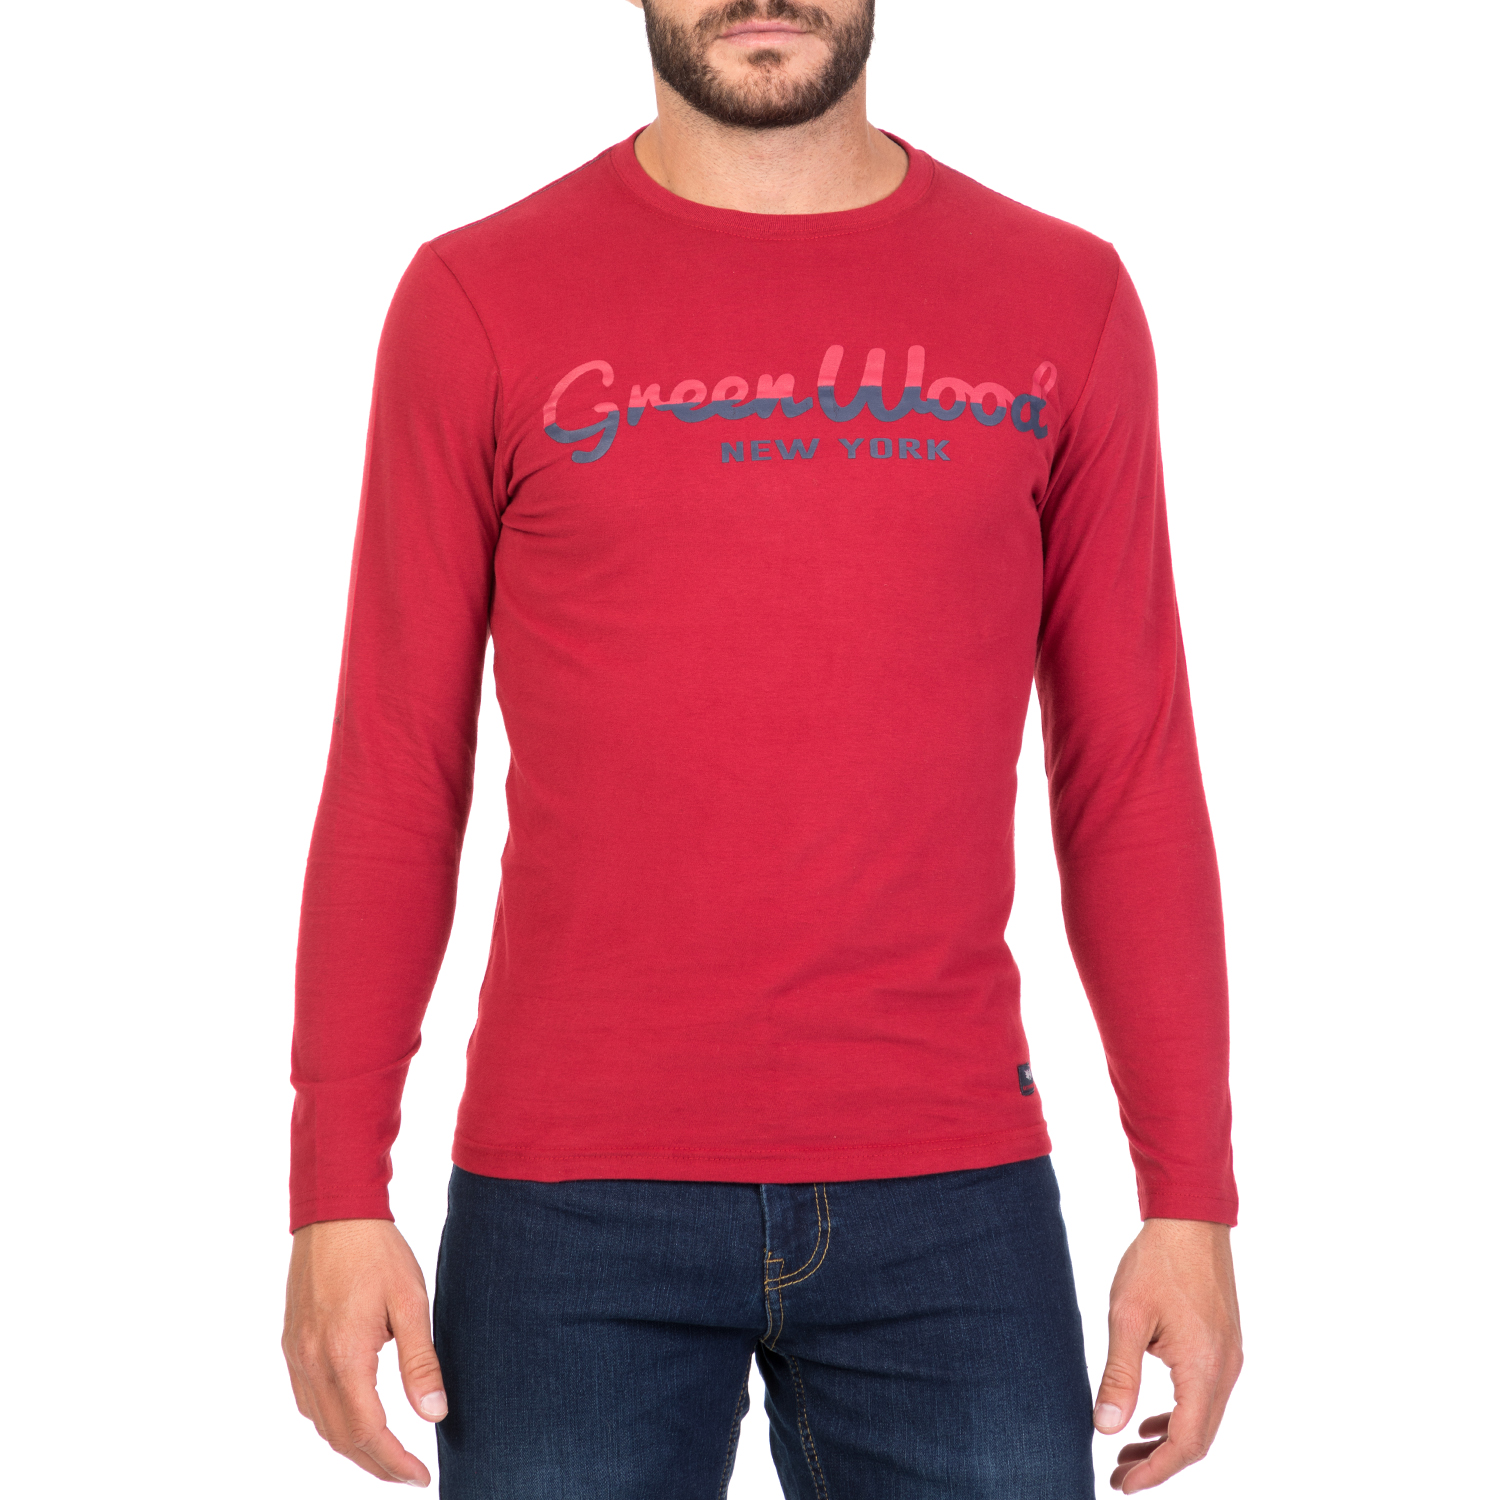 Ανδρικά/Ρούχα/Μπλούζες/Μακρυμάνικες GREENWOOD - Ανδρική μακρυμάνικη μπλούζα GREENWOOD κόκκινη